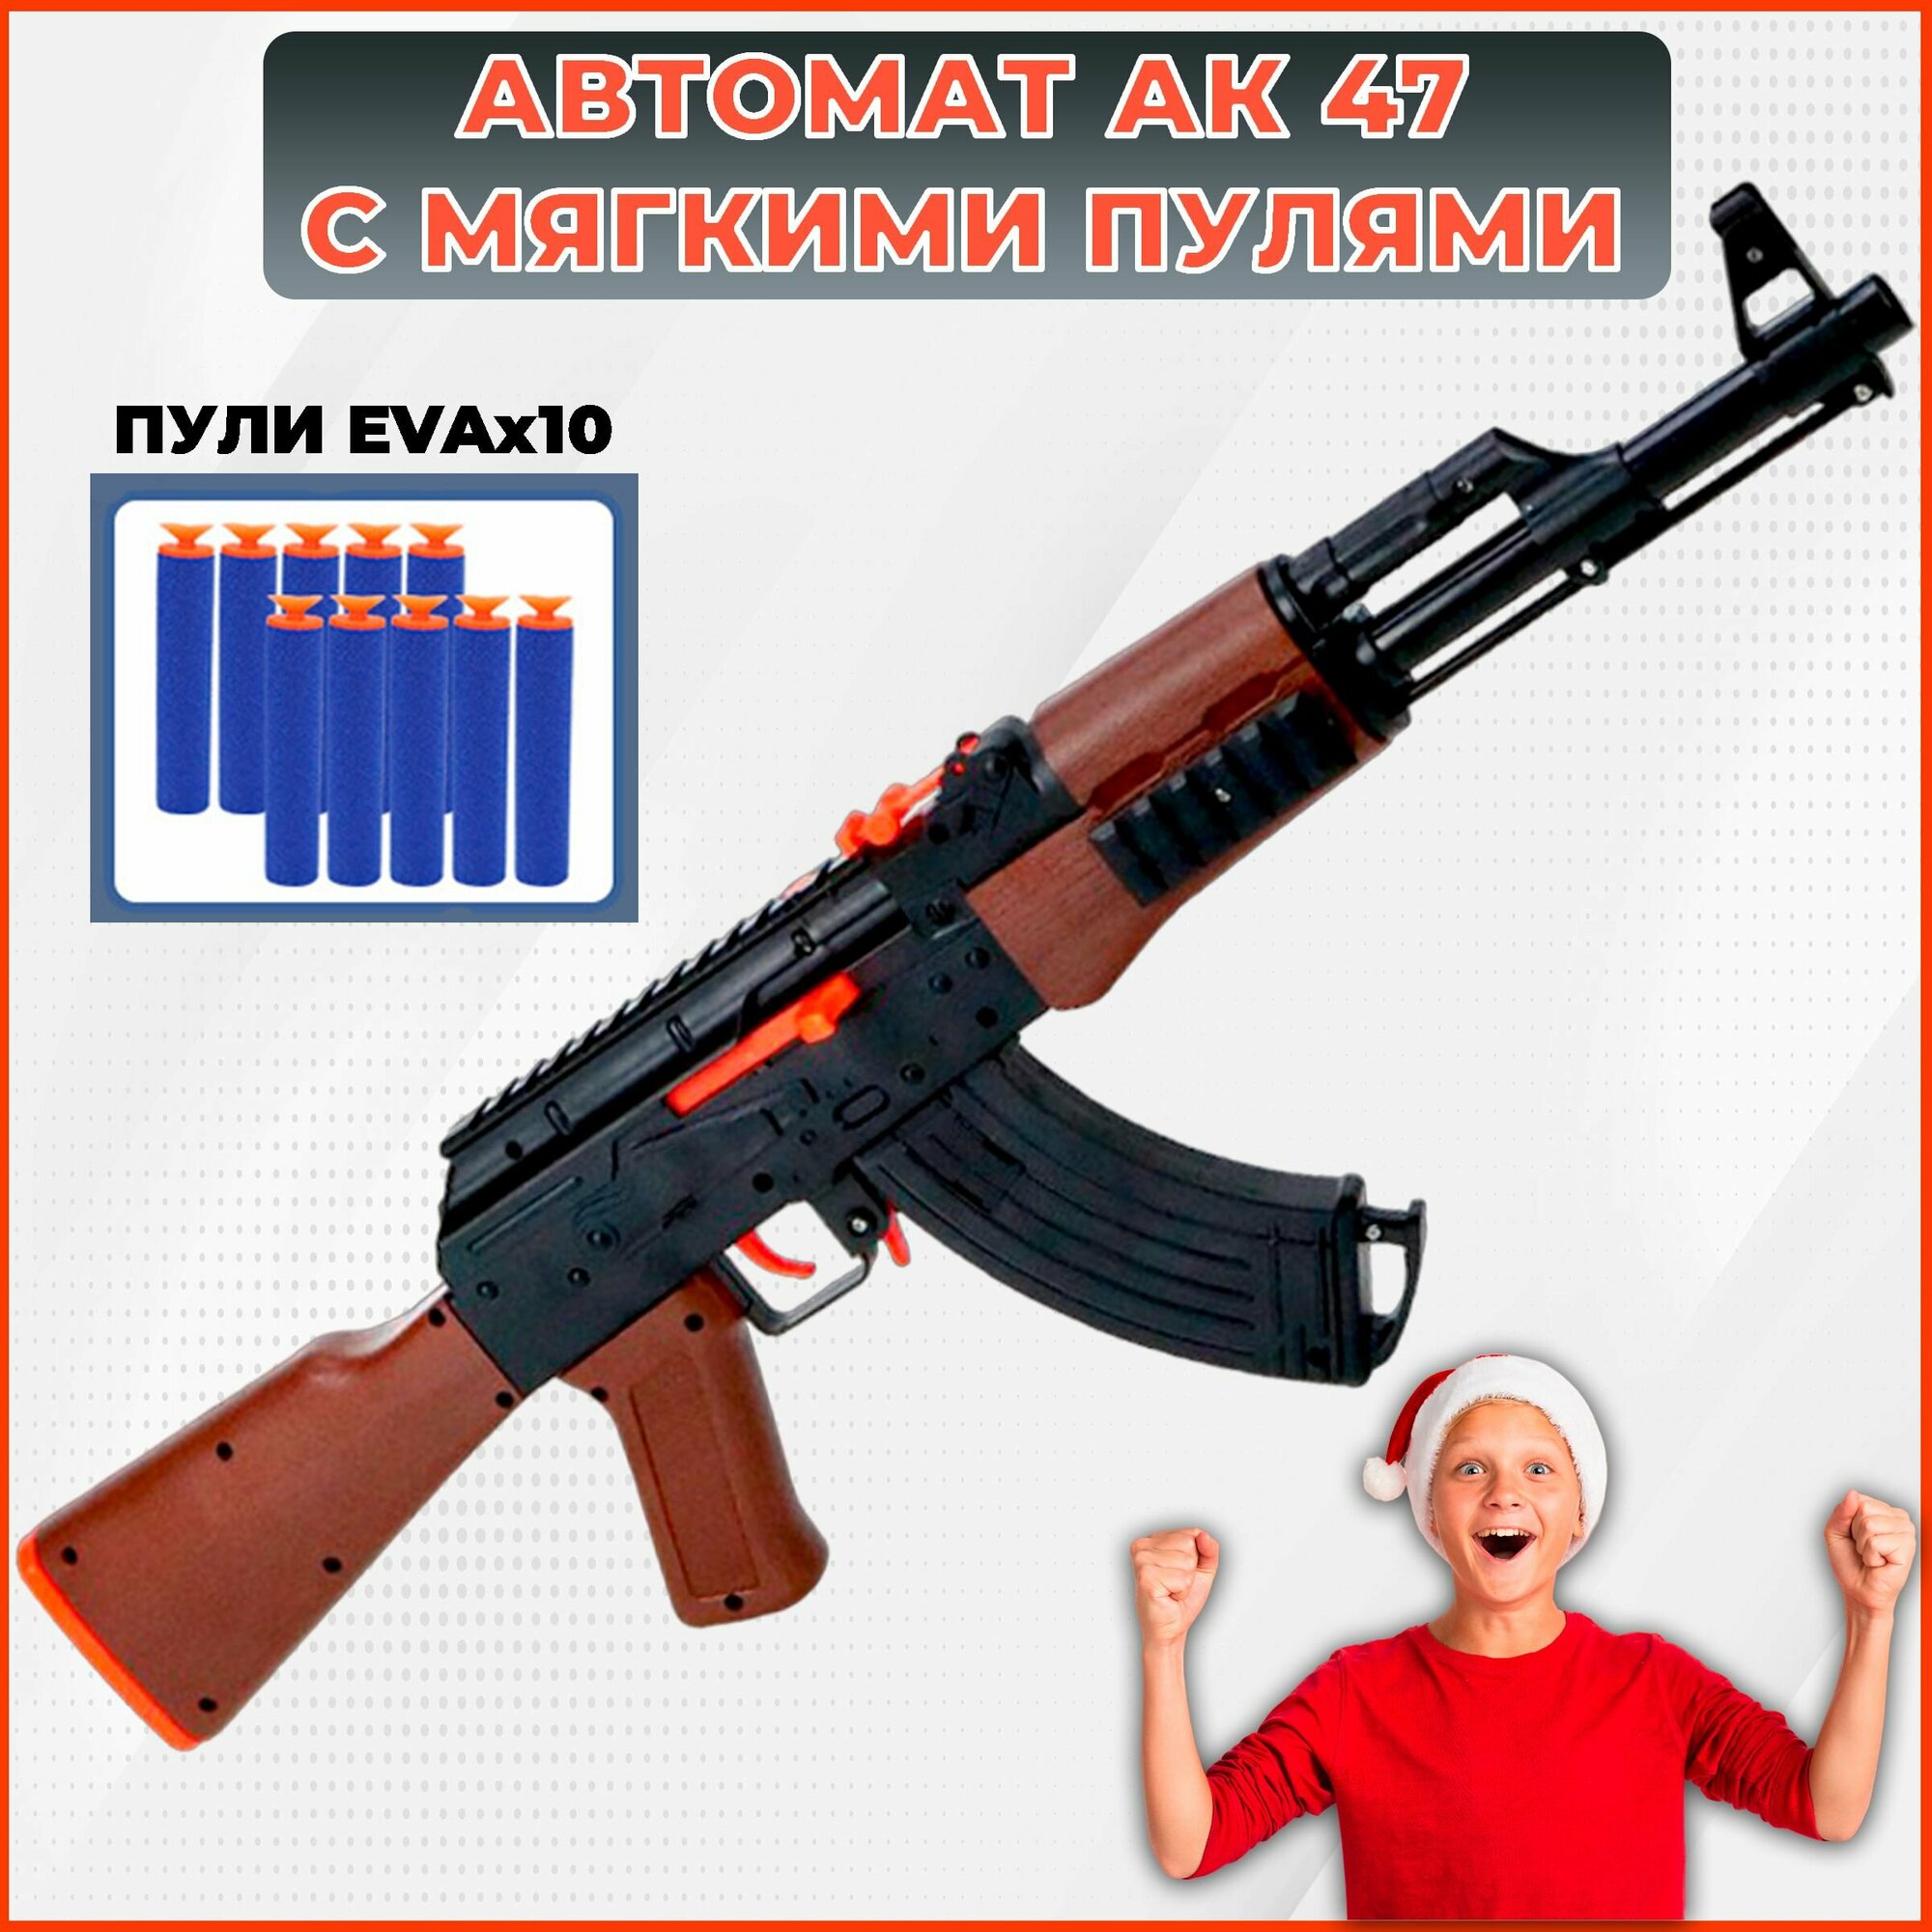 Автомат игрушечный Калашников АК 47, снайперская винтовка стреляет мягкими пулями нерф. Детское оружие, подарок на Новый год мальчику